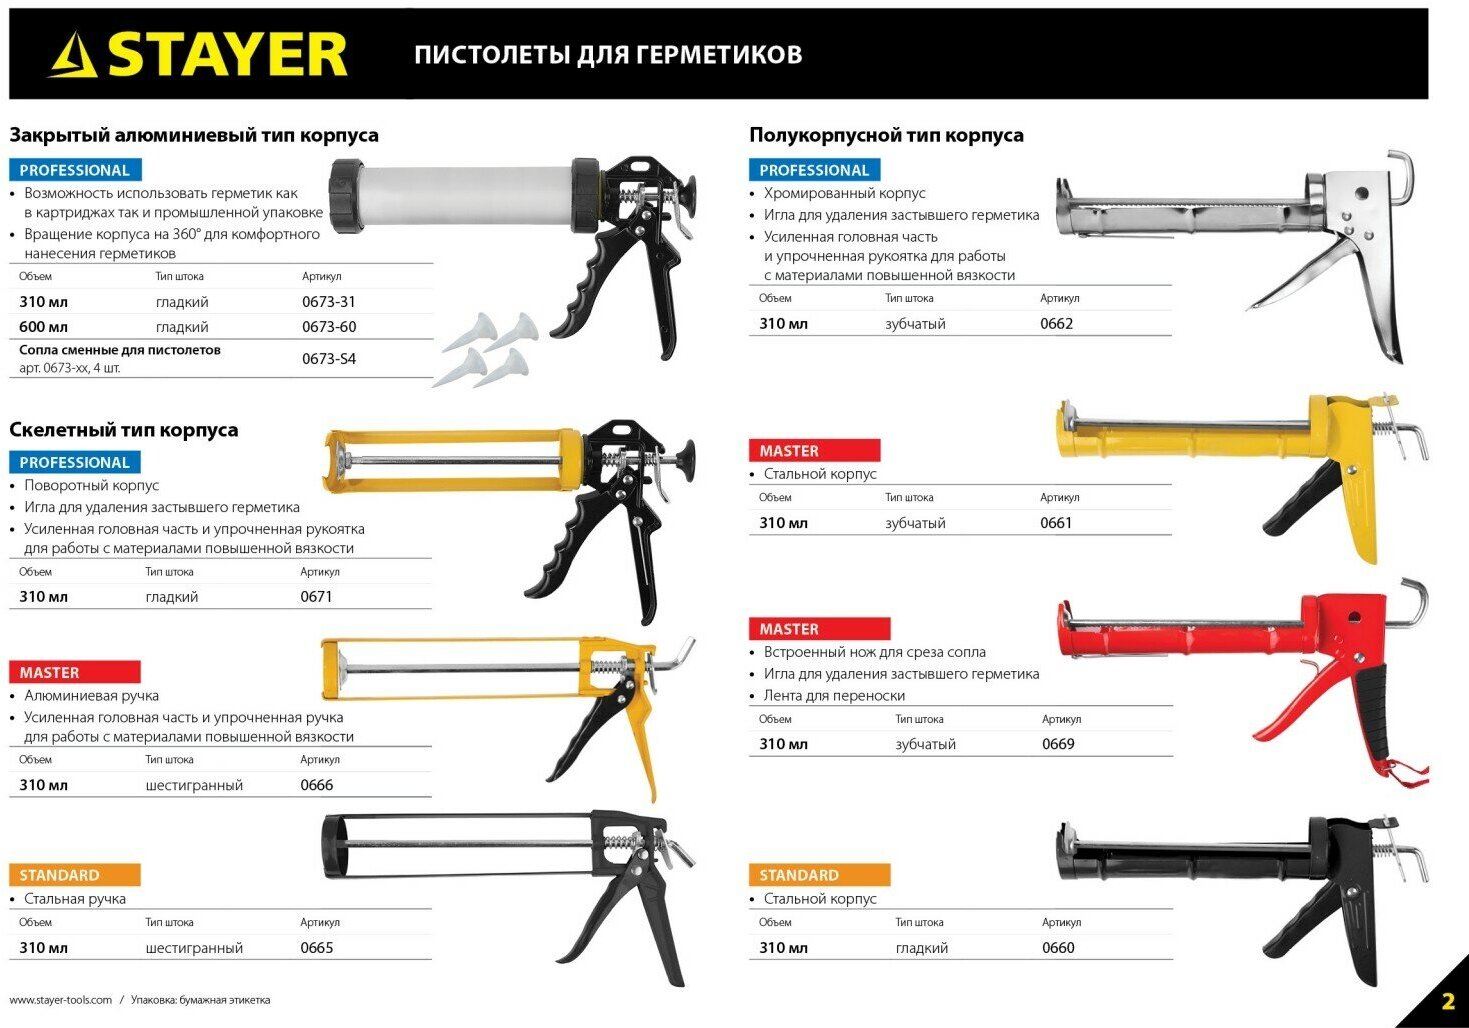 STAYER 310 мл усиленный поворотный, скелетный пистолет для герметика, PROFESSIONAL (0671)